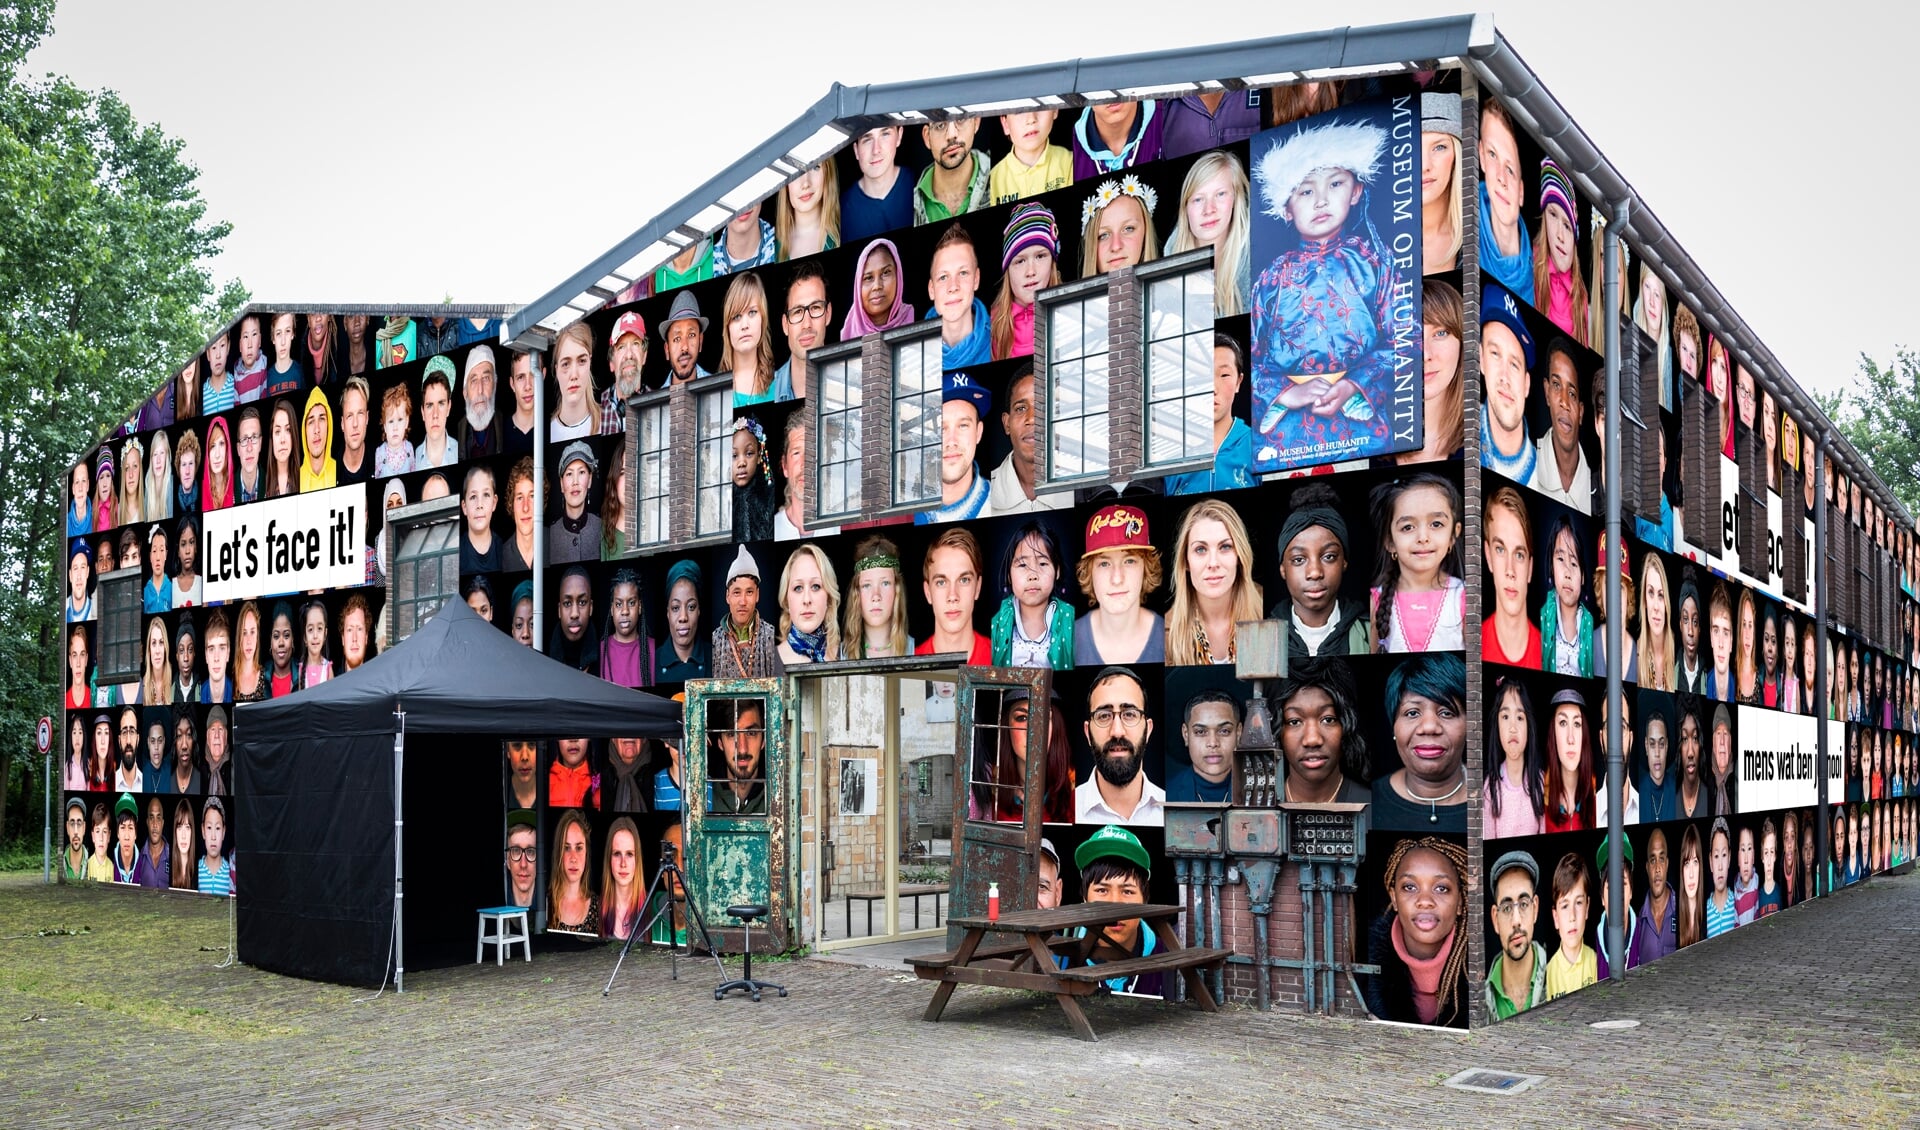 Op de buitenmuren van het Museum of Humanity komen honderden grote gezichten te hangen. Het project Let’s face it! is een eerbetoon aan de mensheid.